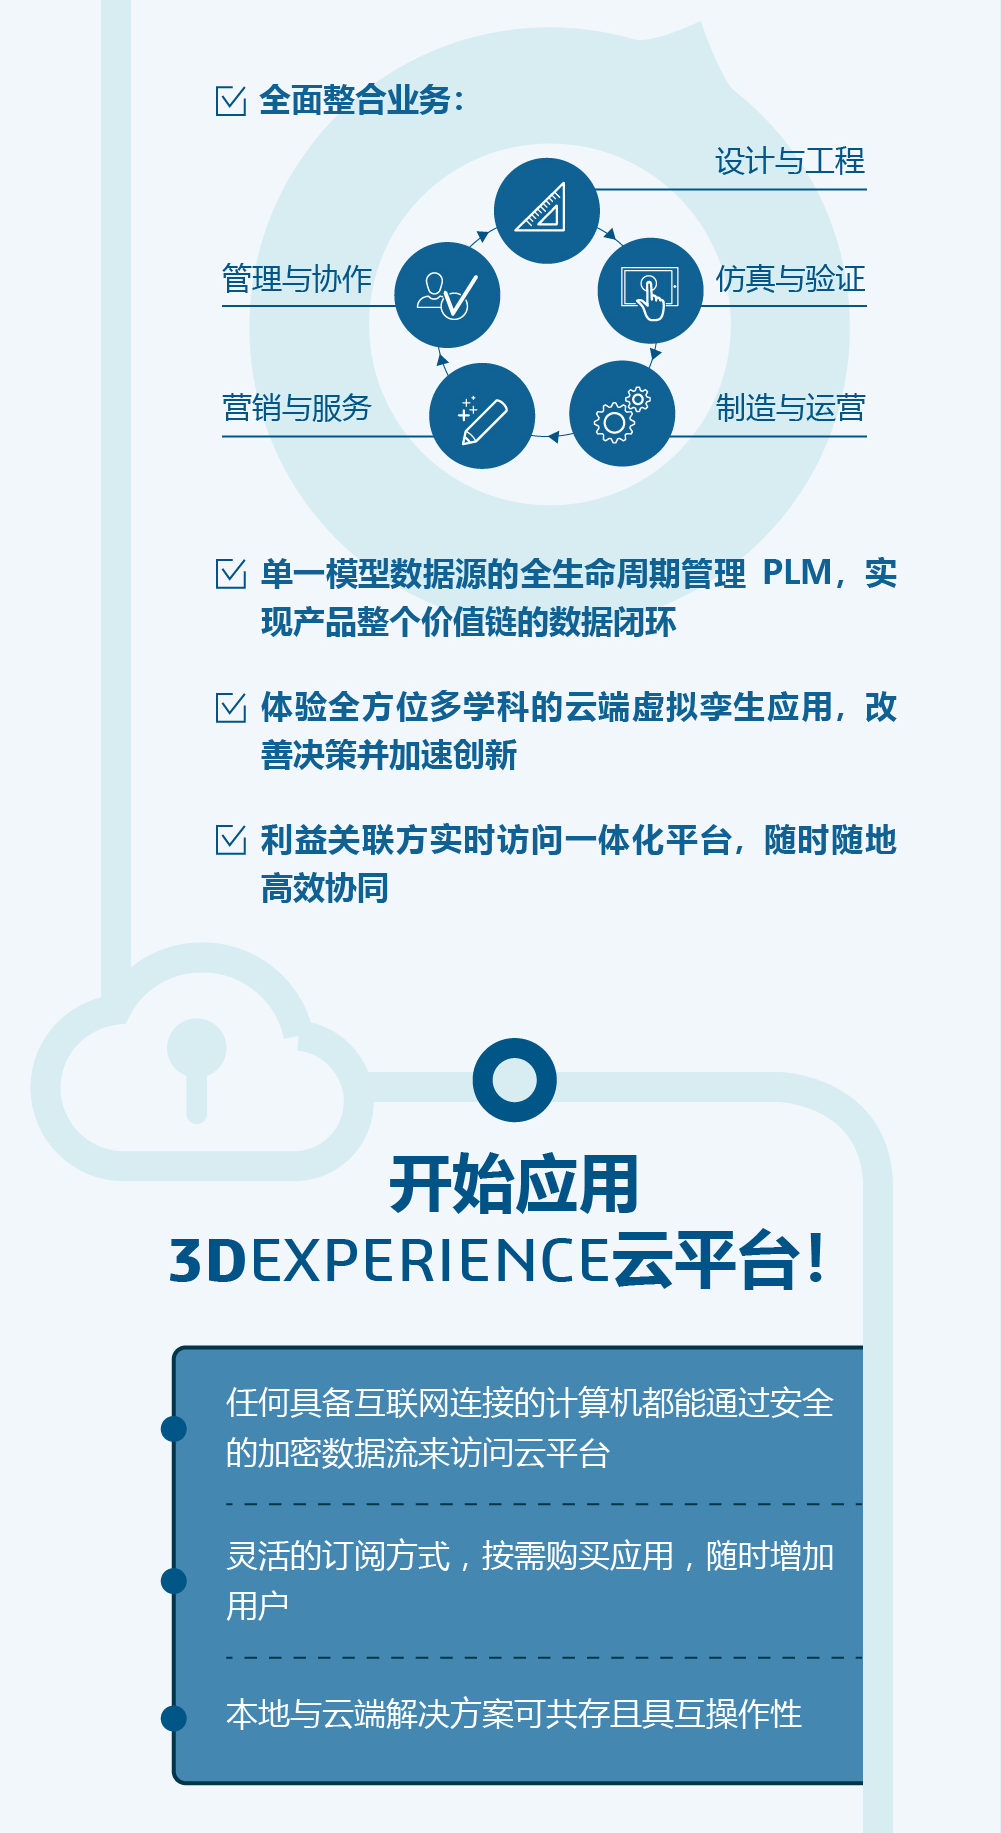 一图读懂-3DEXPERIENCE云平台2.png